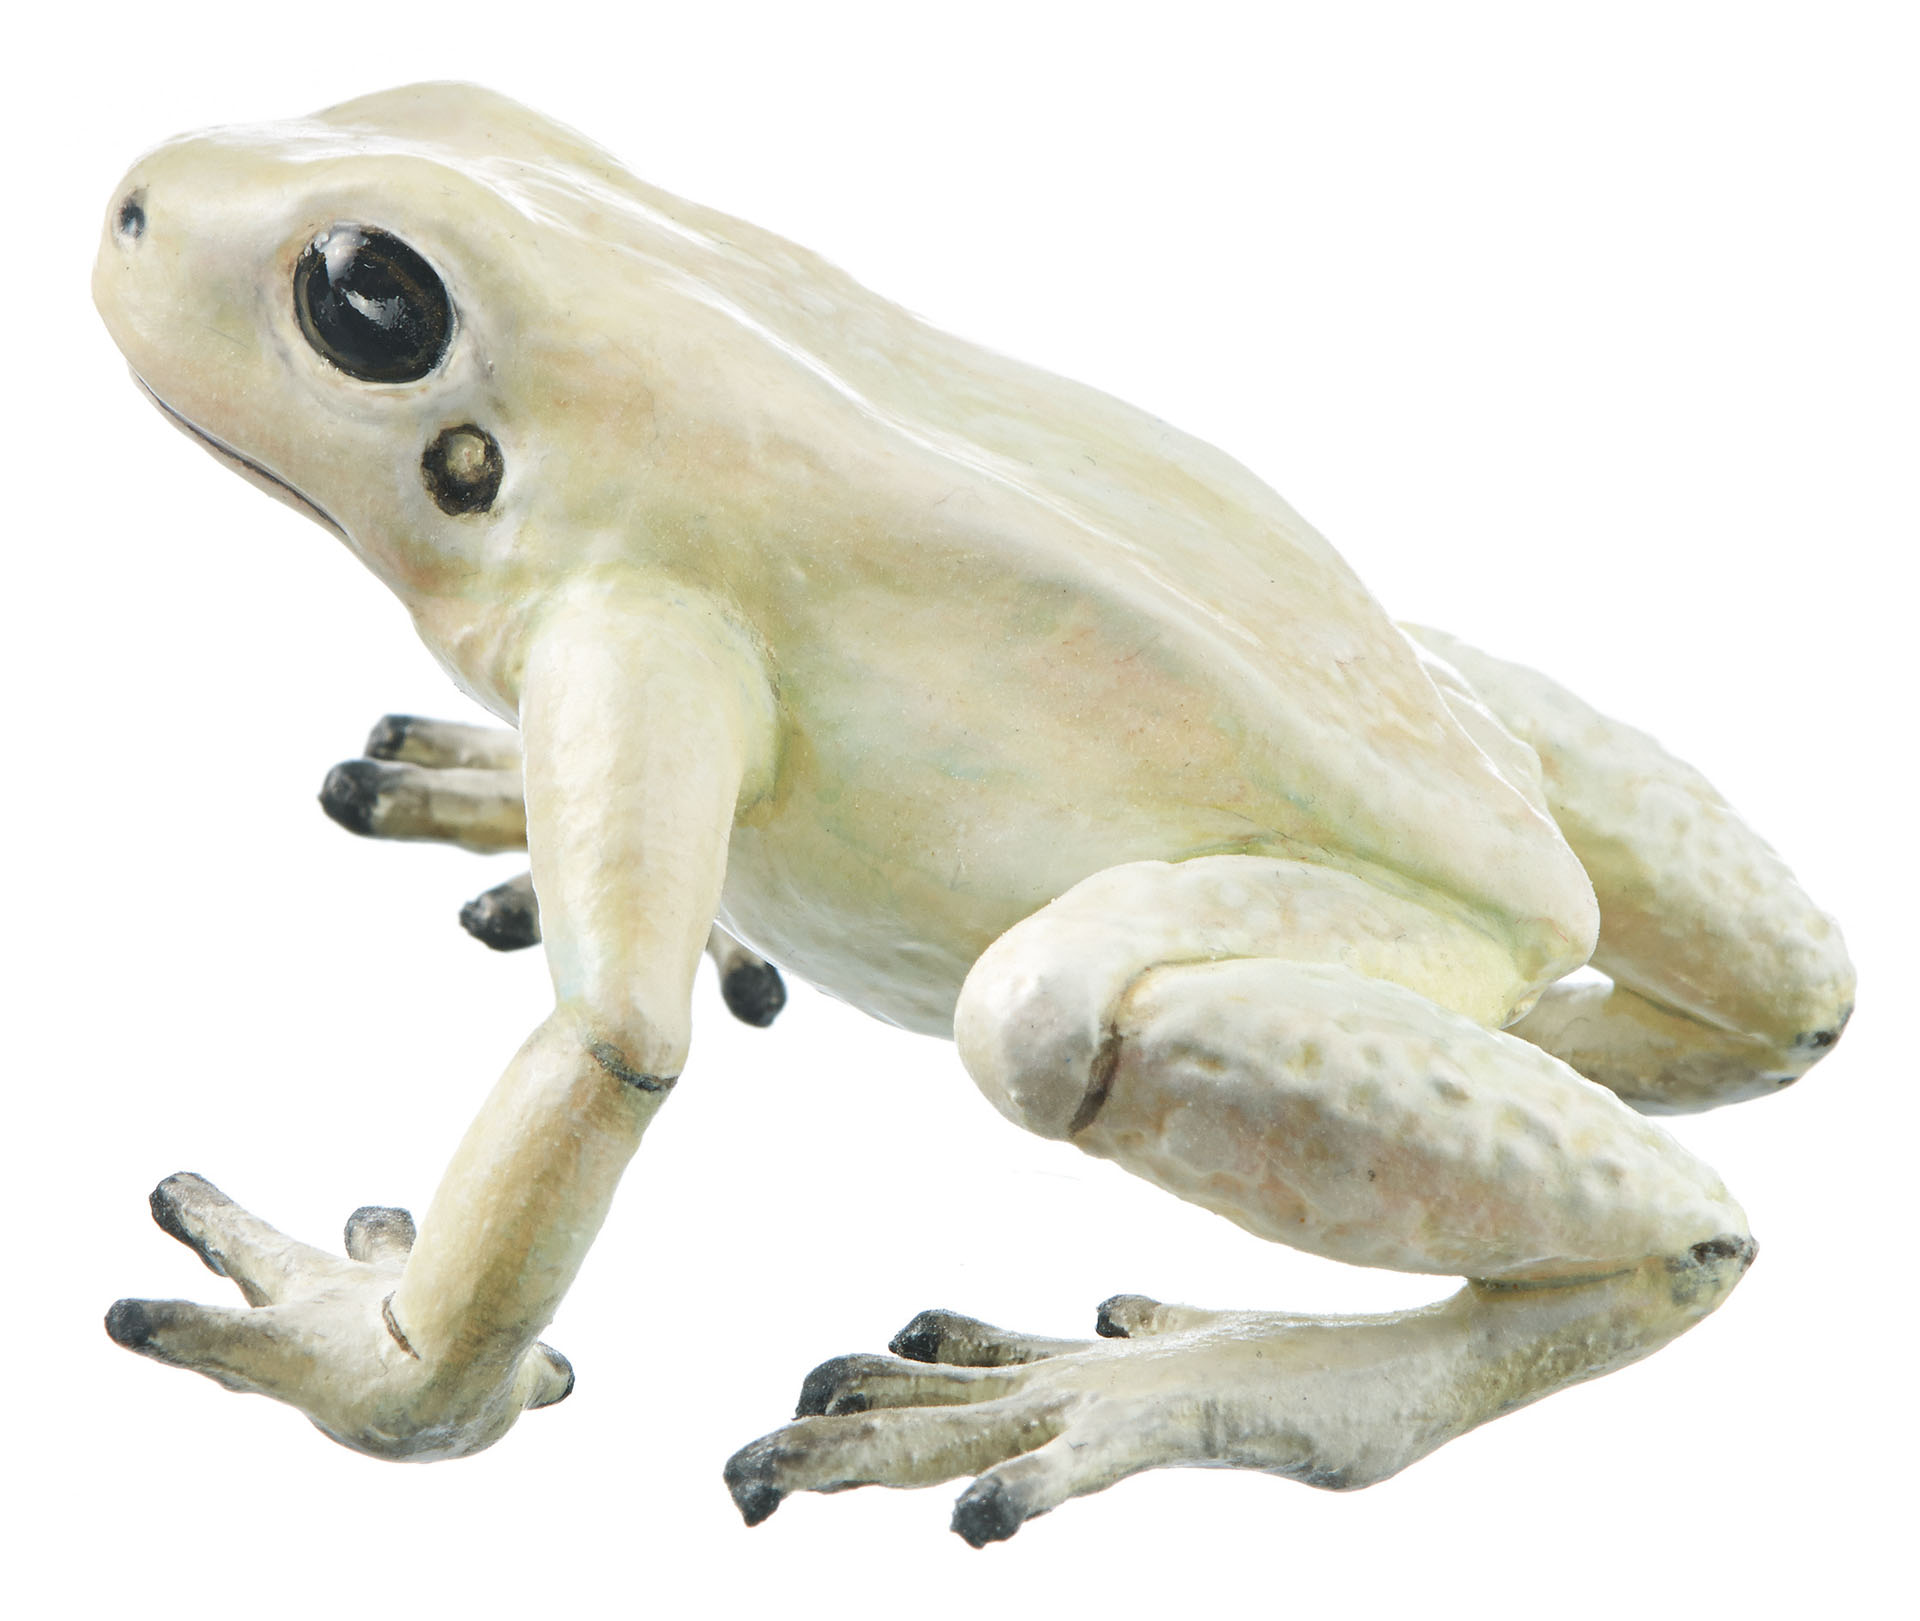 Golden Poison Frog “La Brea” Cream-Coloured, Female